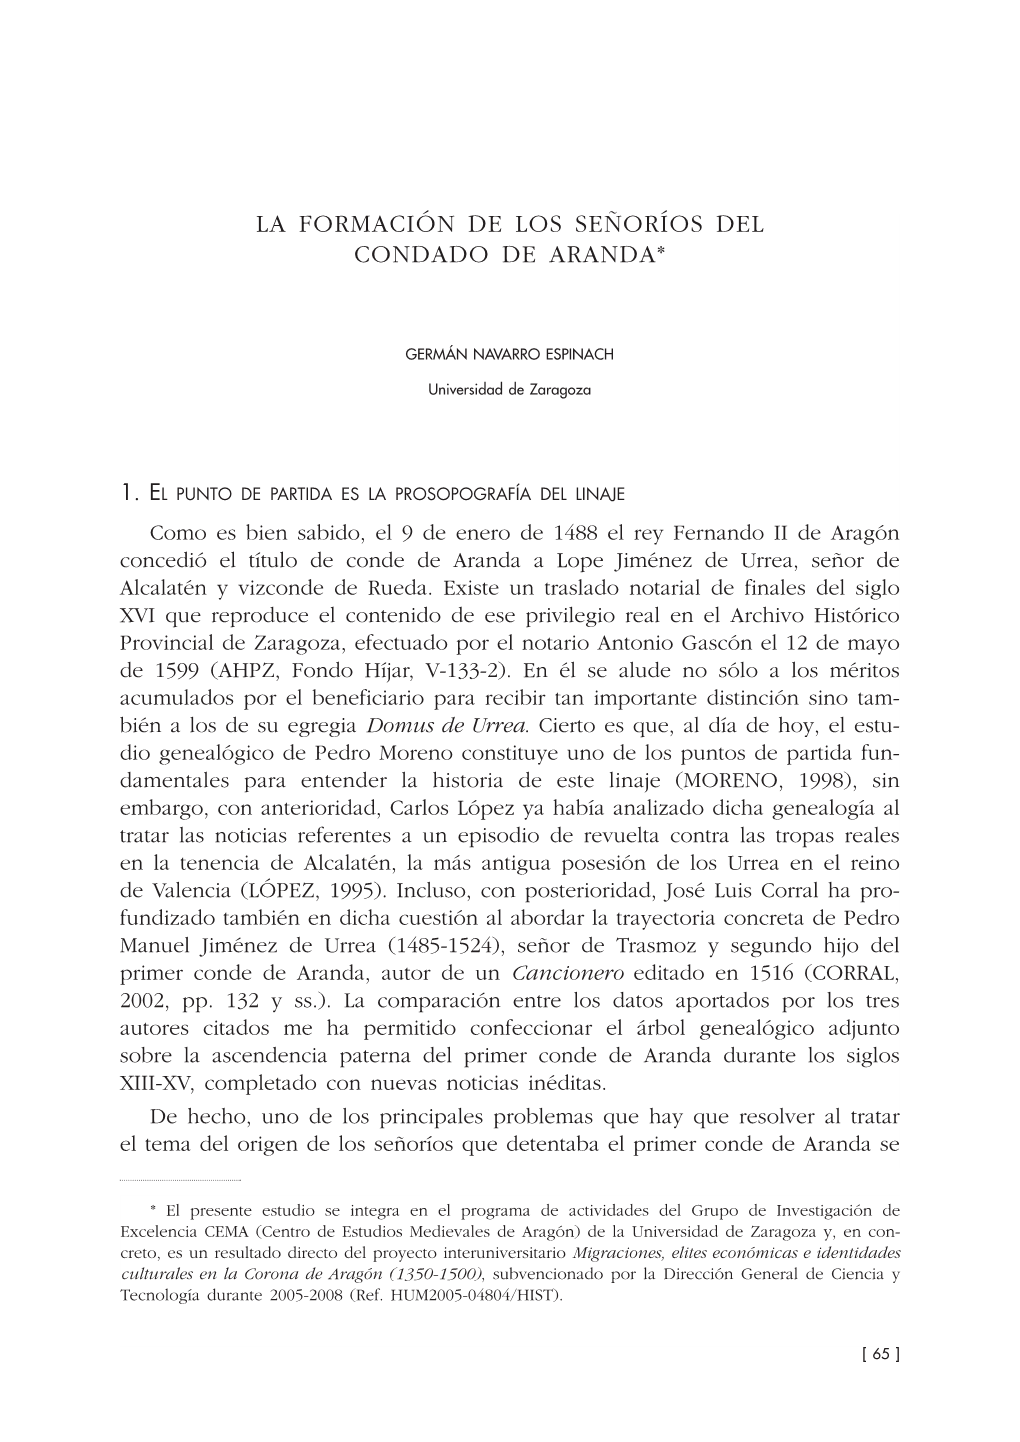 4. La Formación De Los Señoríos Del Condado De Aranda, Por Germán